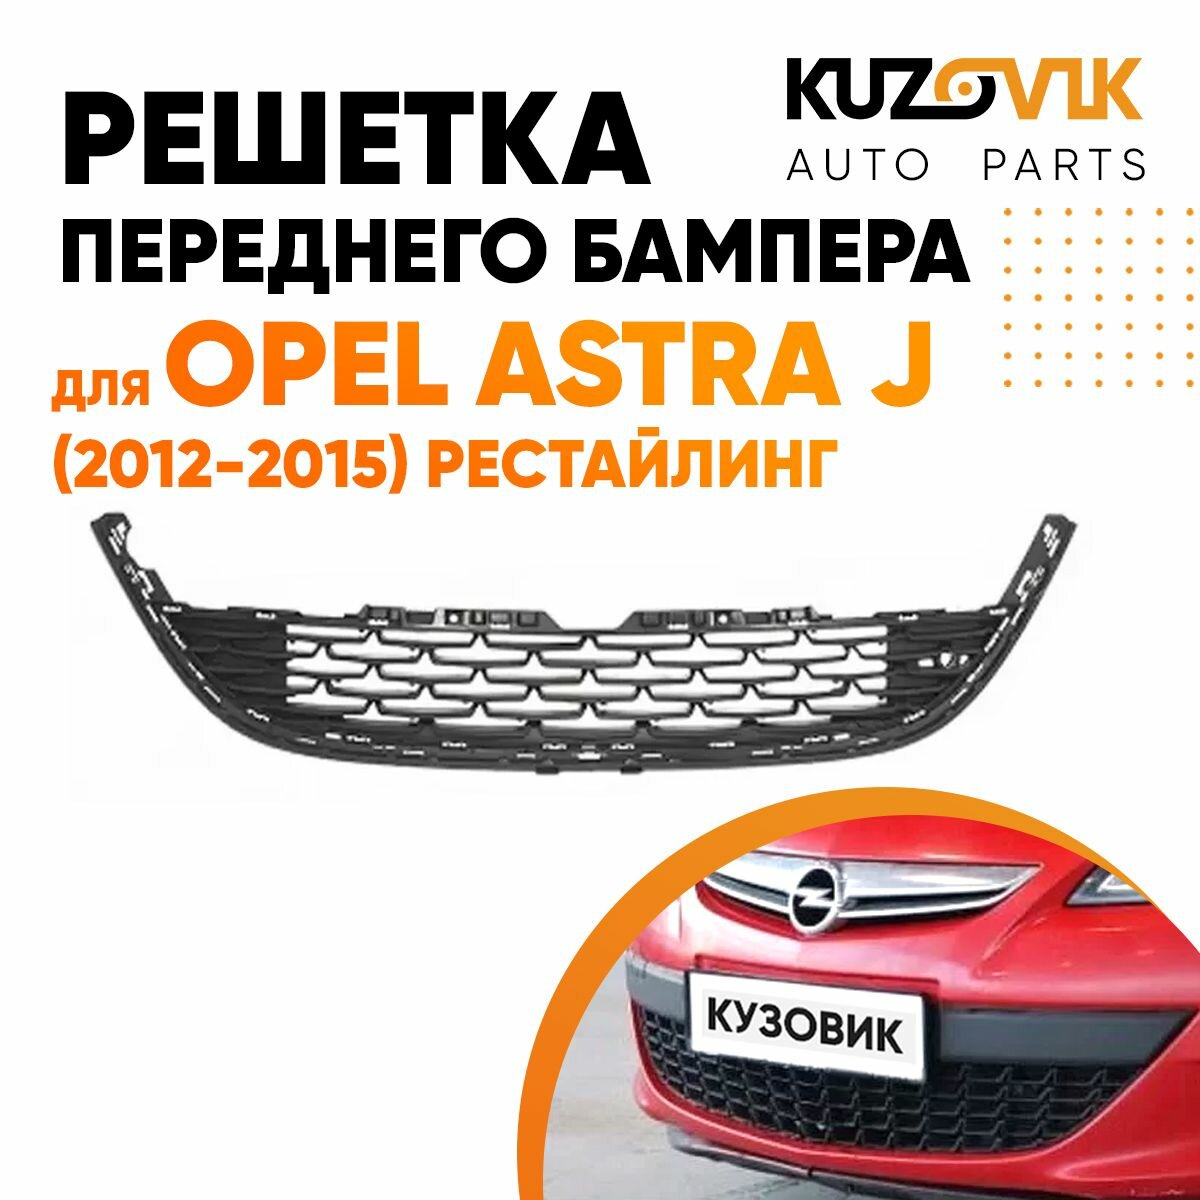 Решетка переднего бампера для Опель Астра Opel Astra J (2012-2015) рестайлинг накладка